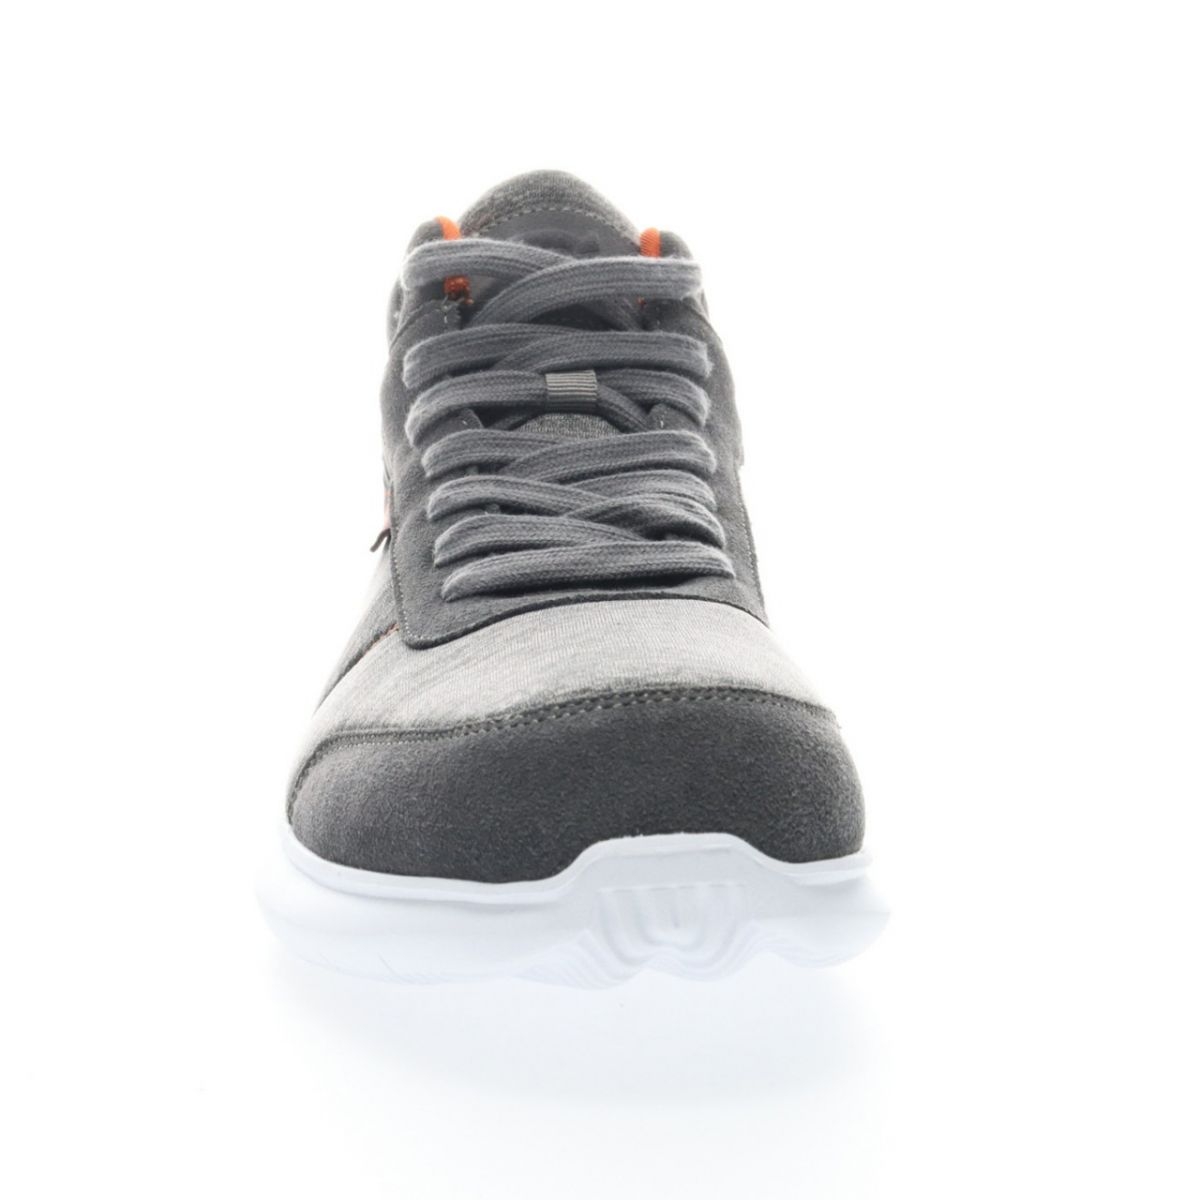 Propet Men's Viator Hi Sneaker Grey/Orange - MAA112MGOR Grey/orange - Grey/orange, 9